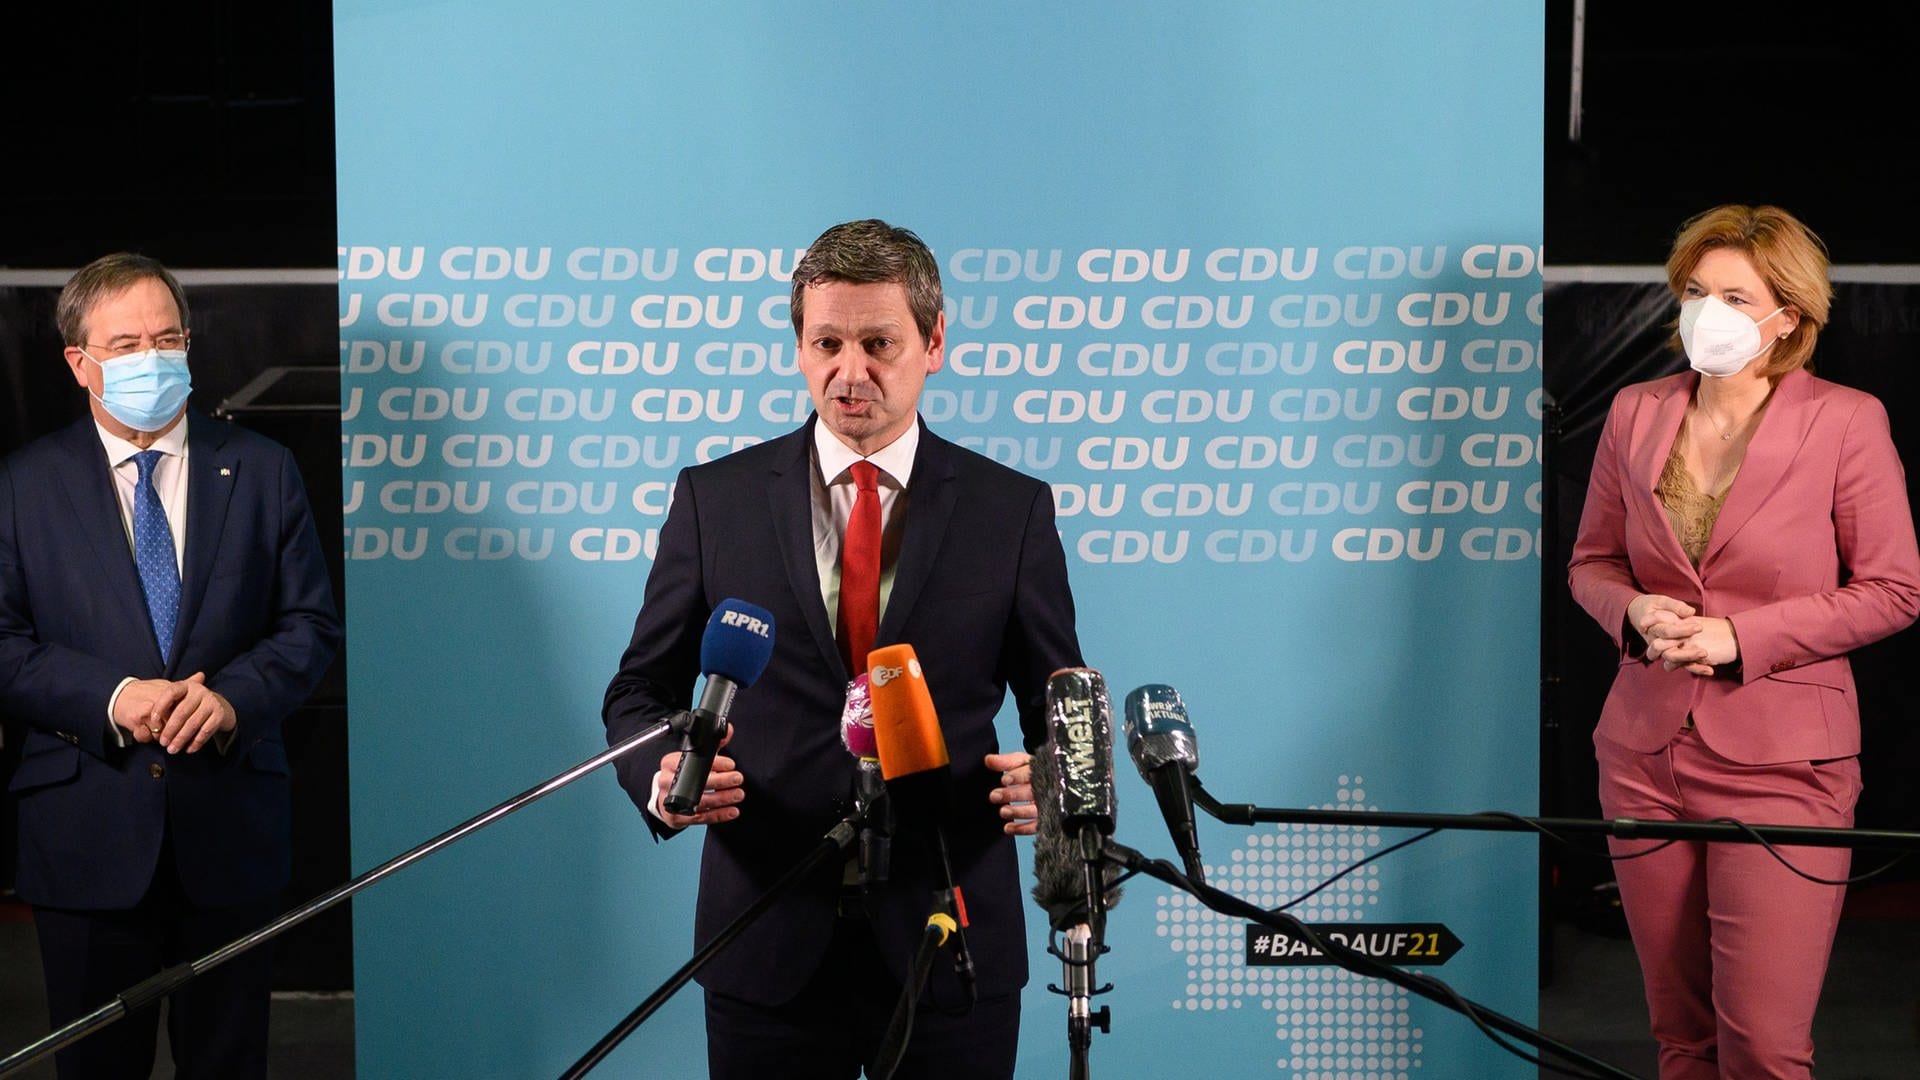 Cdu Rheinland Pfalz Verabschiedet Programm Fur Landtagswahl Swr Aktuell